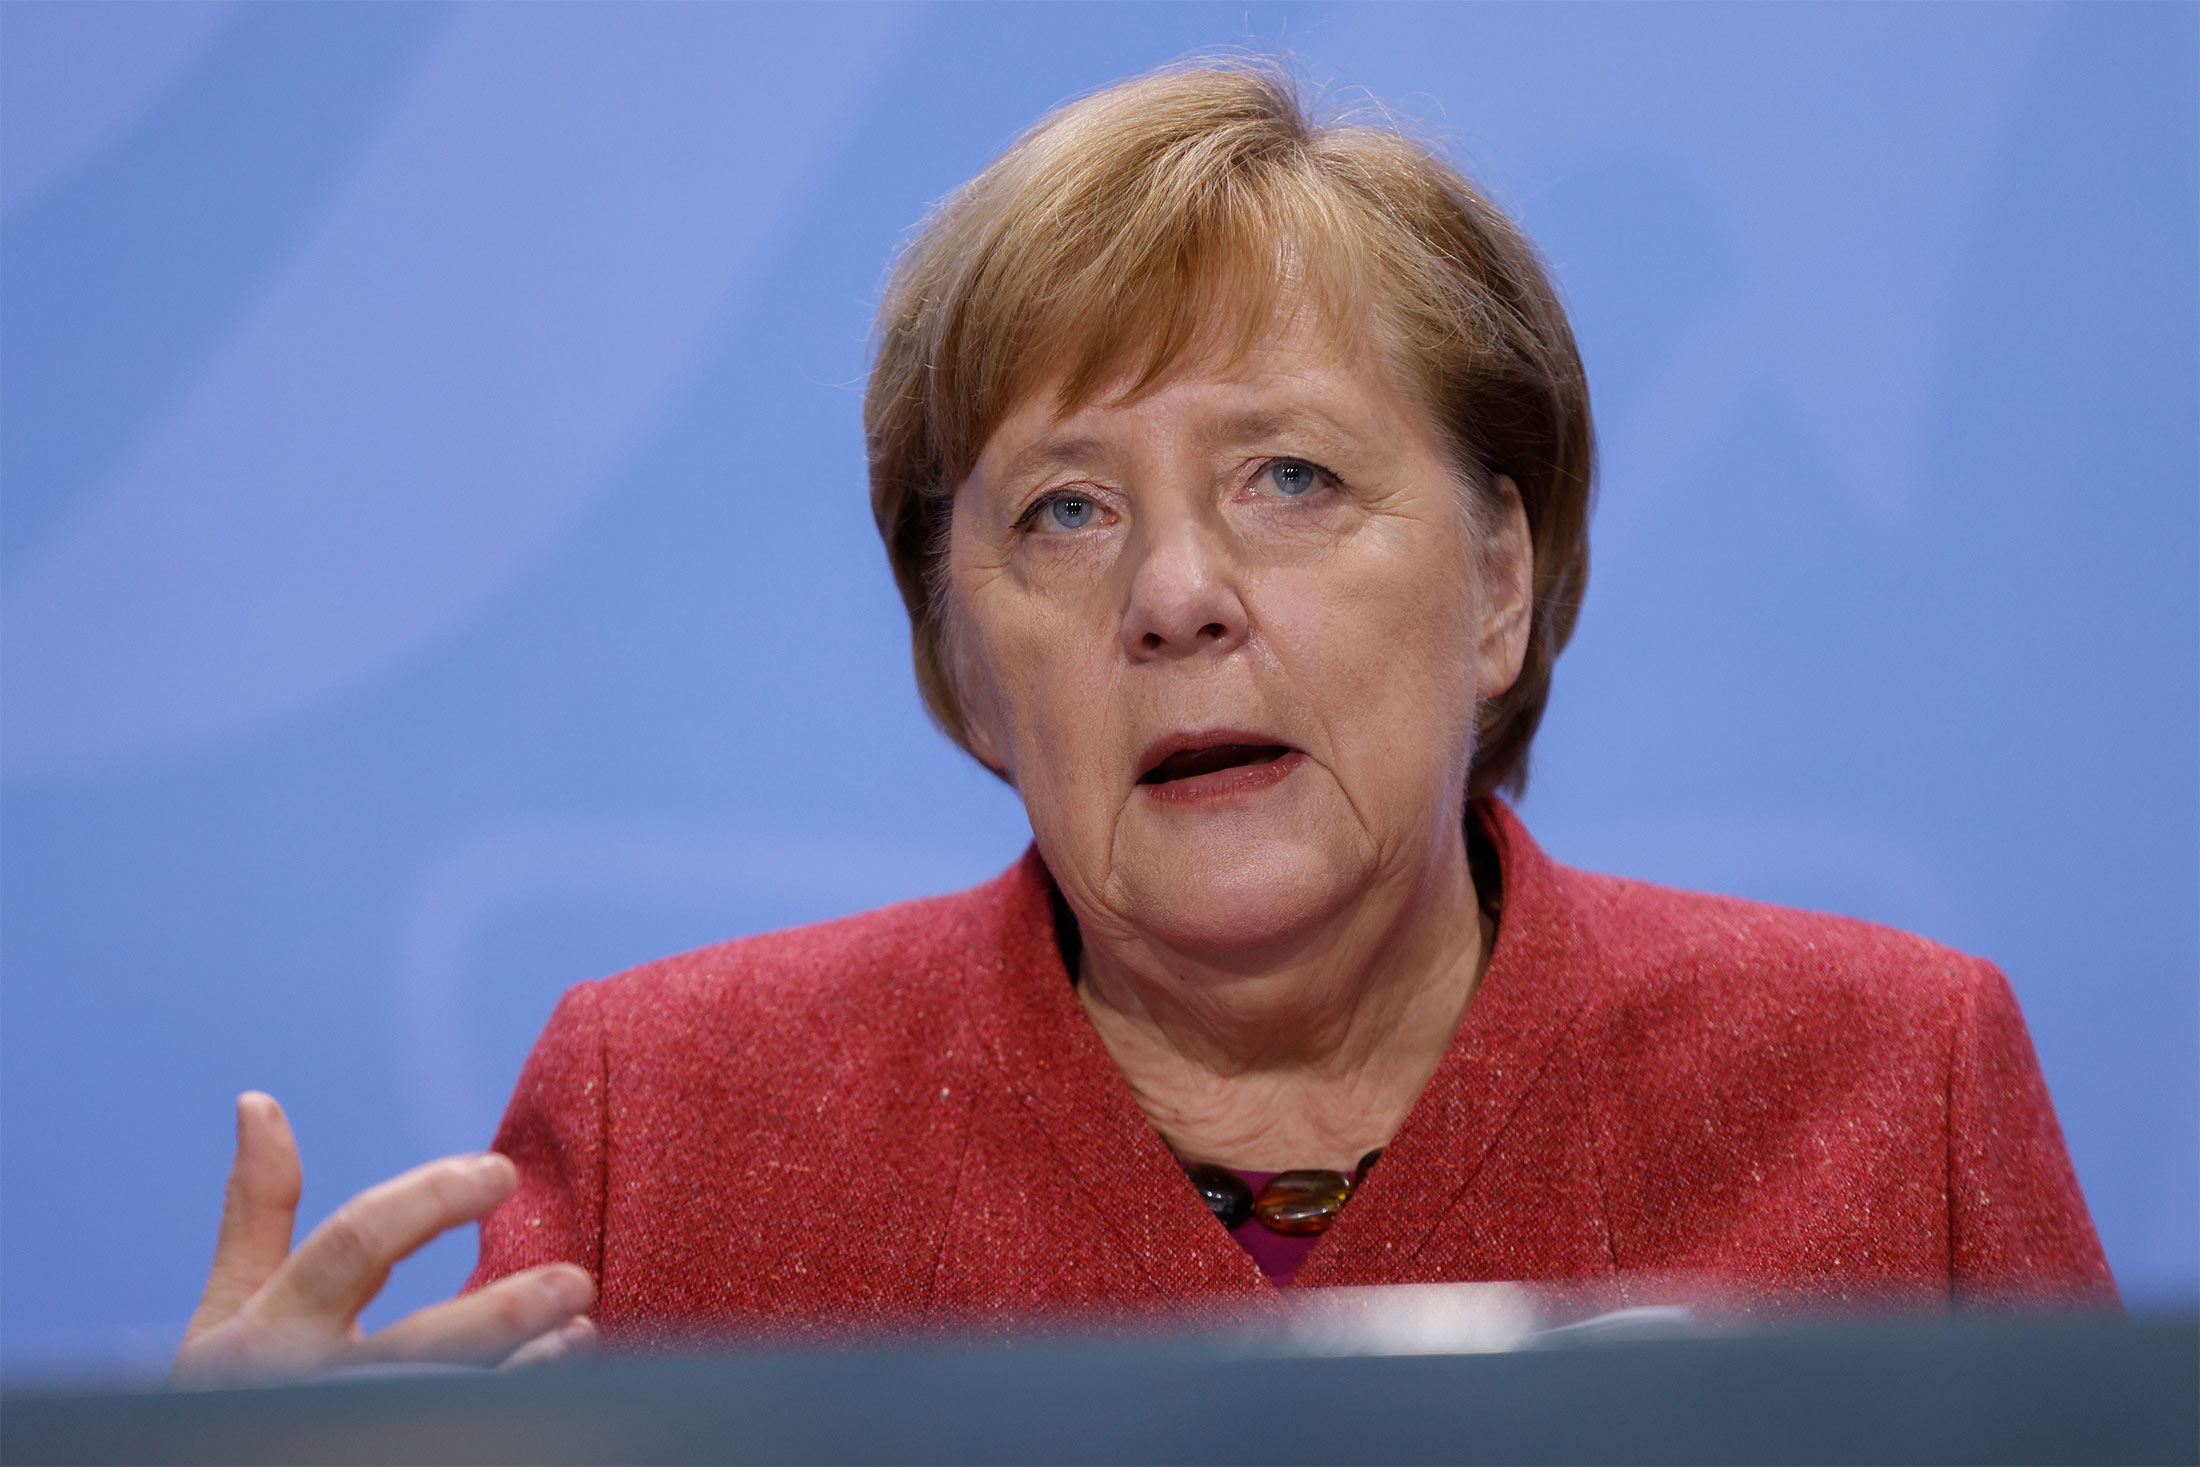 Angela Merkel speaks during a news conference in Berlin on Nov. 16.